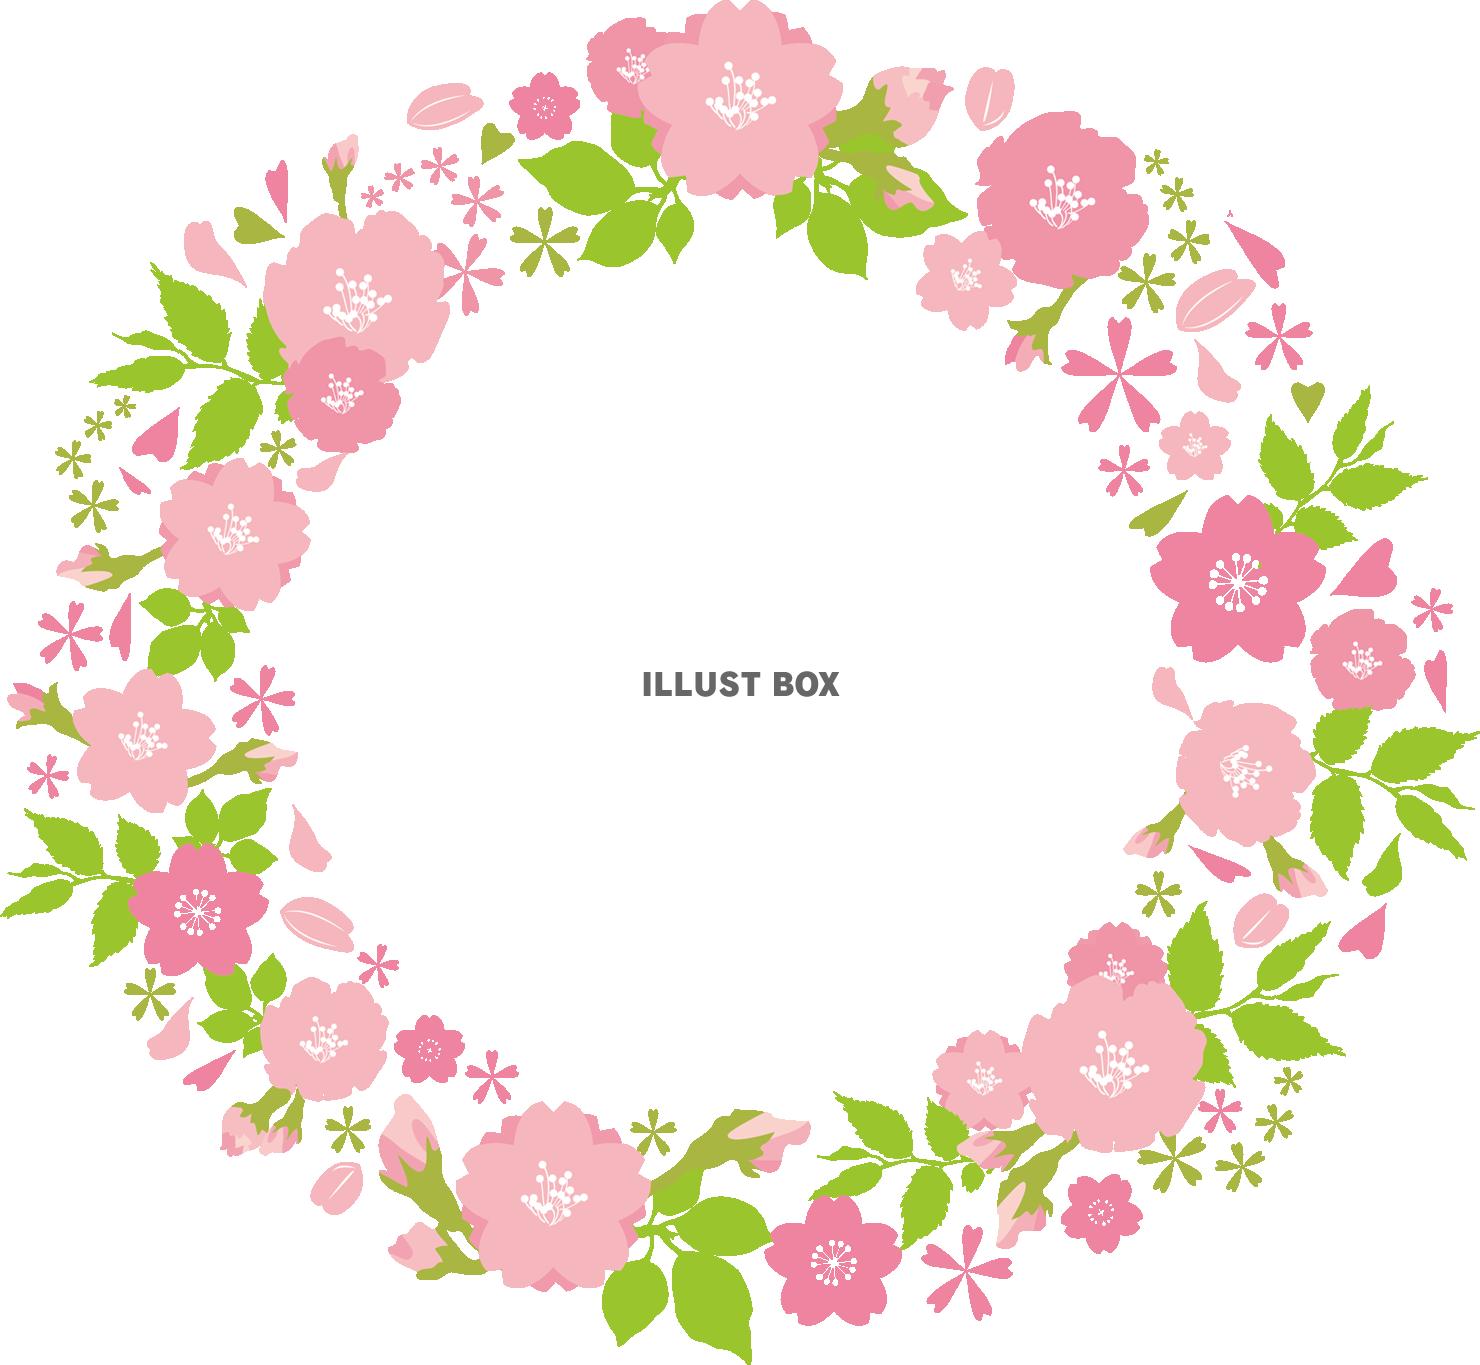 無料イラスト 桜おしゃれフレーム枠飾り枠 春 花 イラスト シルエット